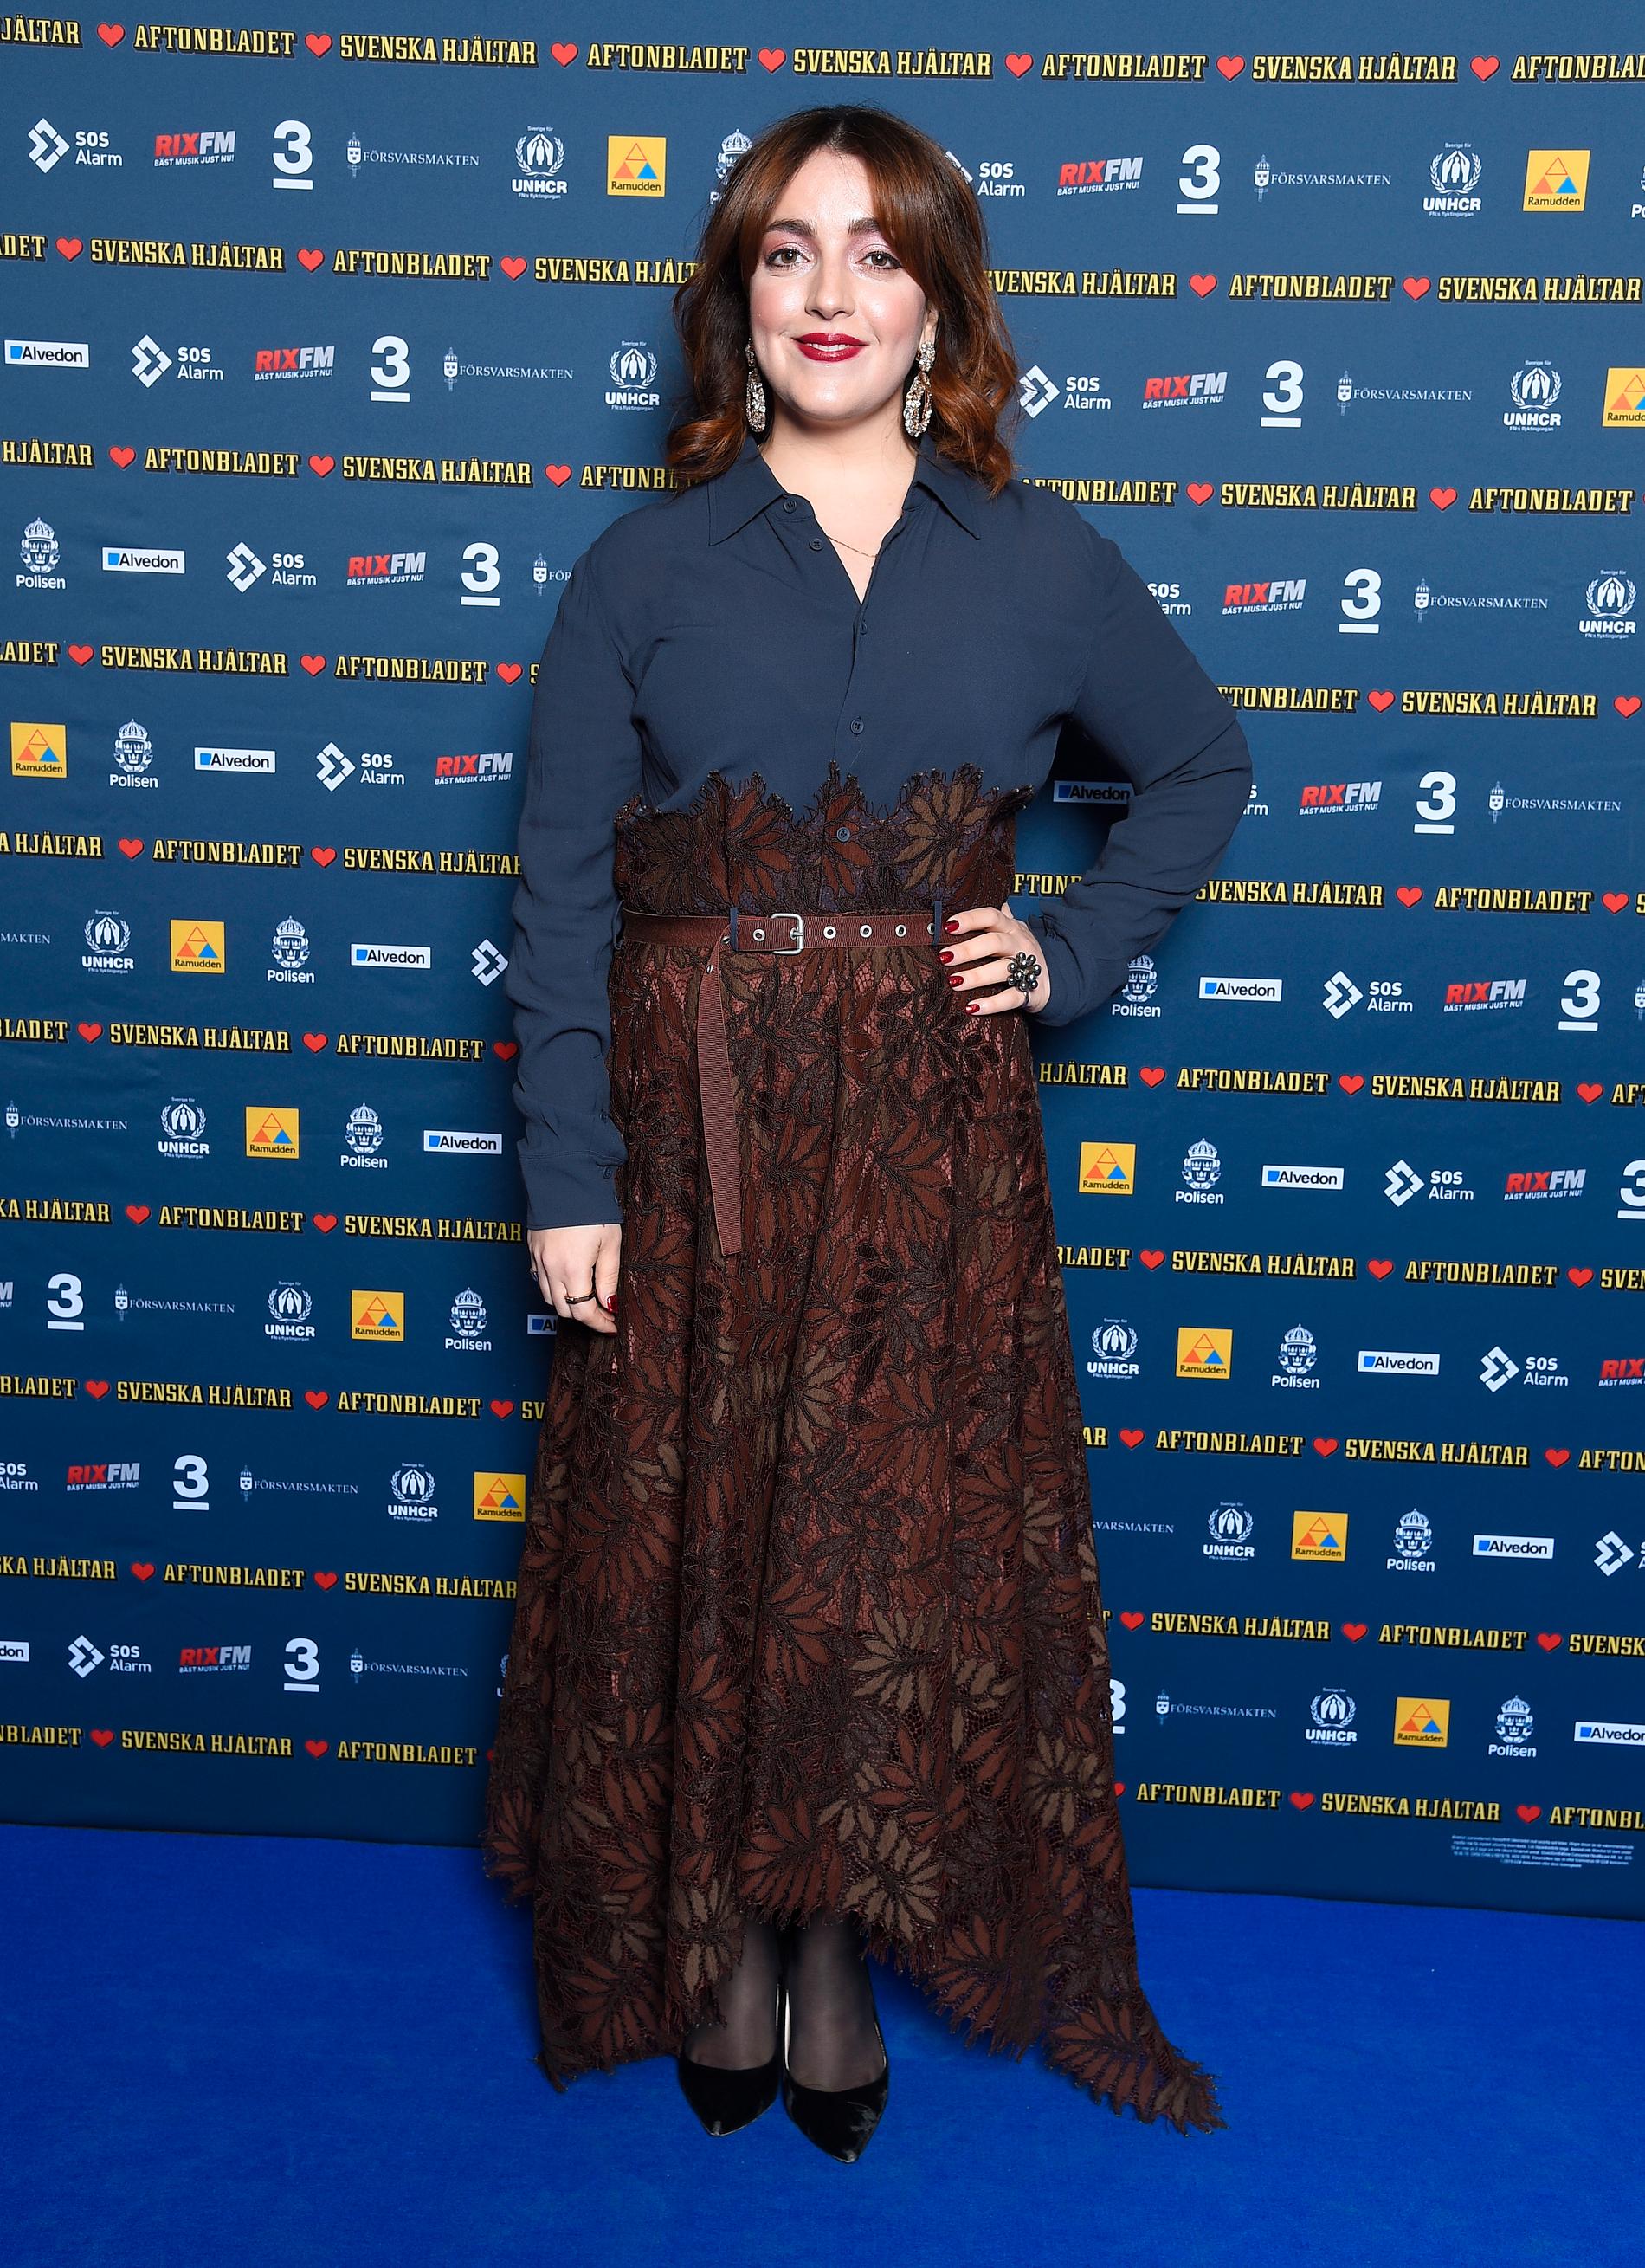 Komikern och skådespelaren Shima Niavarani är ny i Svenska Hjältar jury, och har visat ett oerhört engagemang för hjältehistorierna.